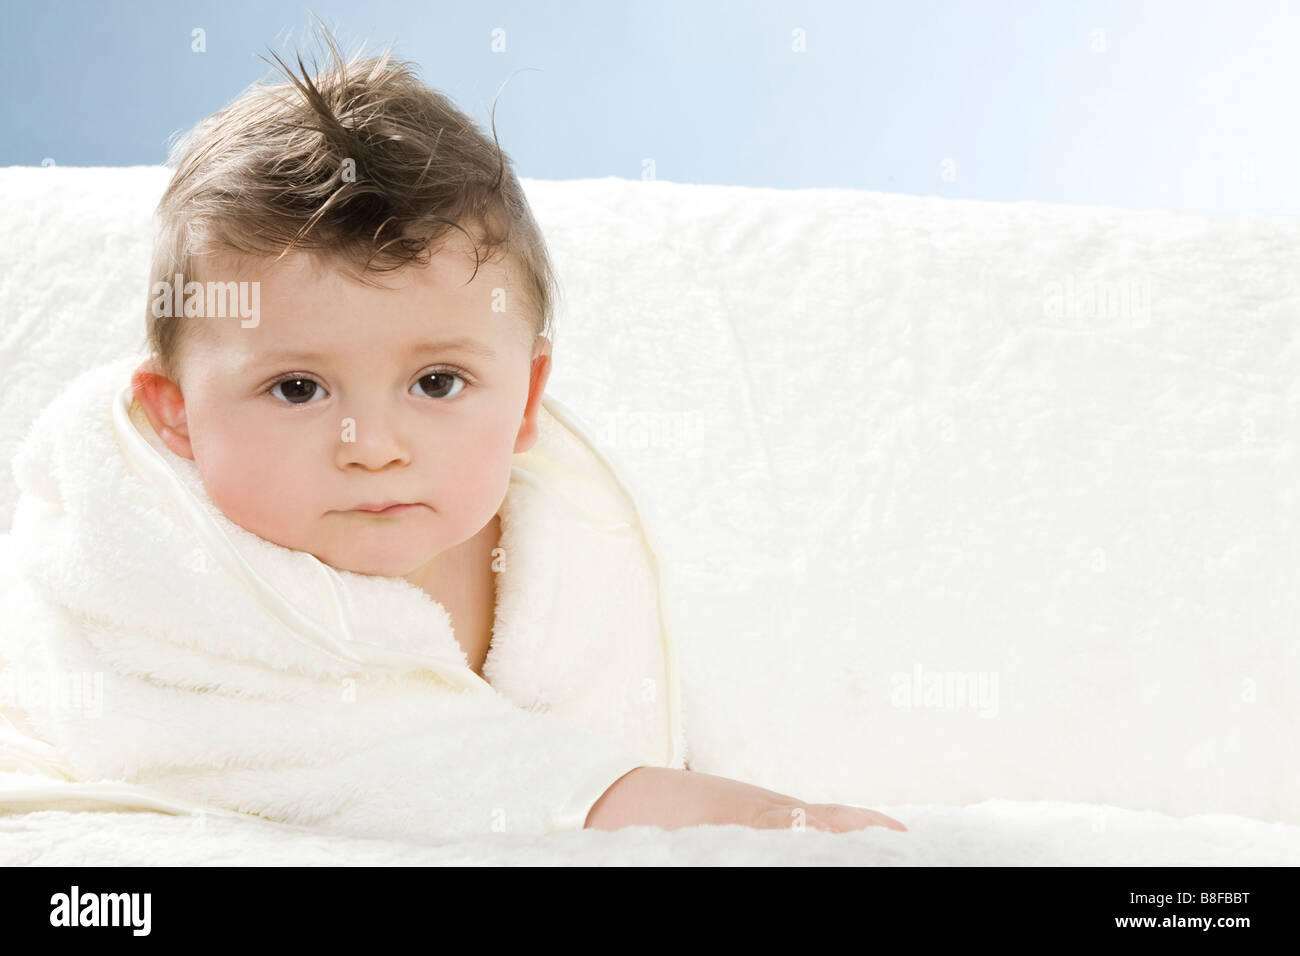 Bébé en robe de chambre après la prise de baignoire Banque D'Images